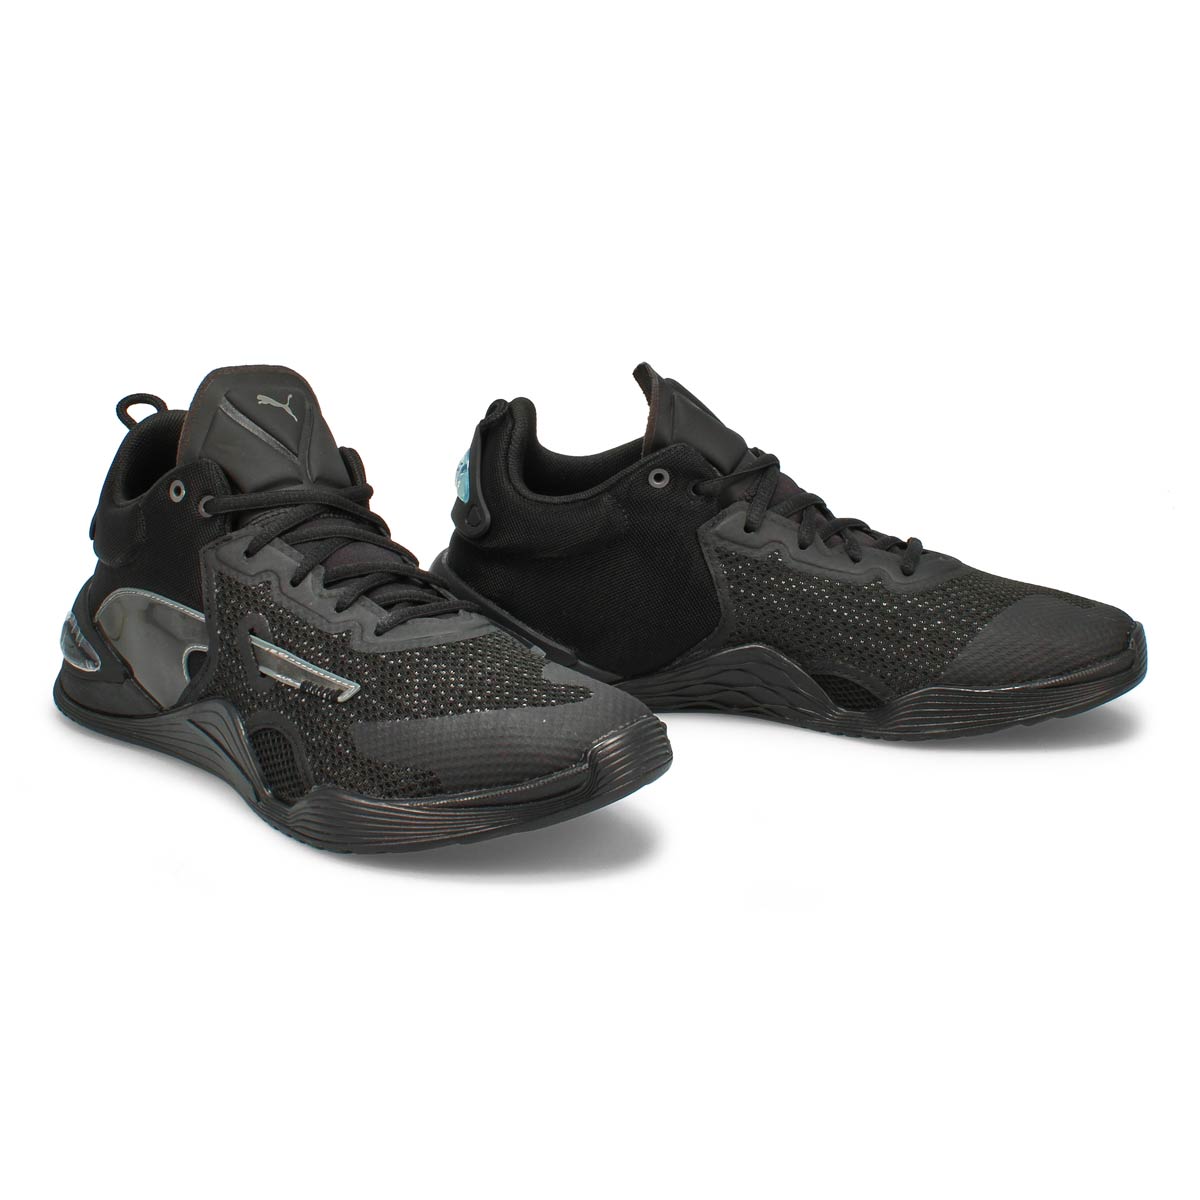 Men's Fuse Sneaker - Black